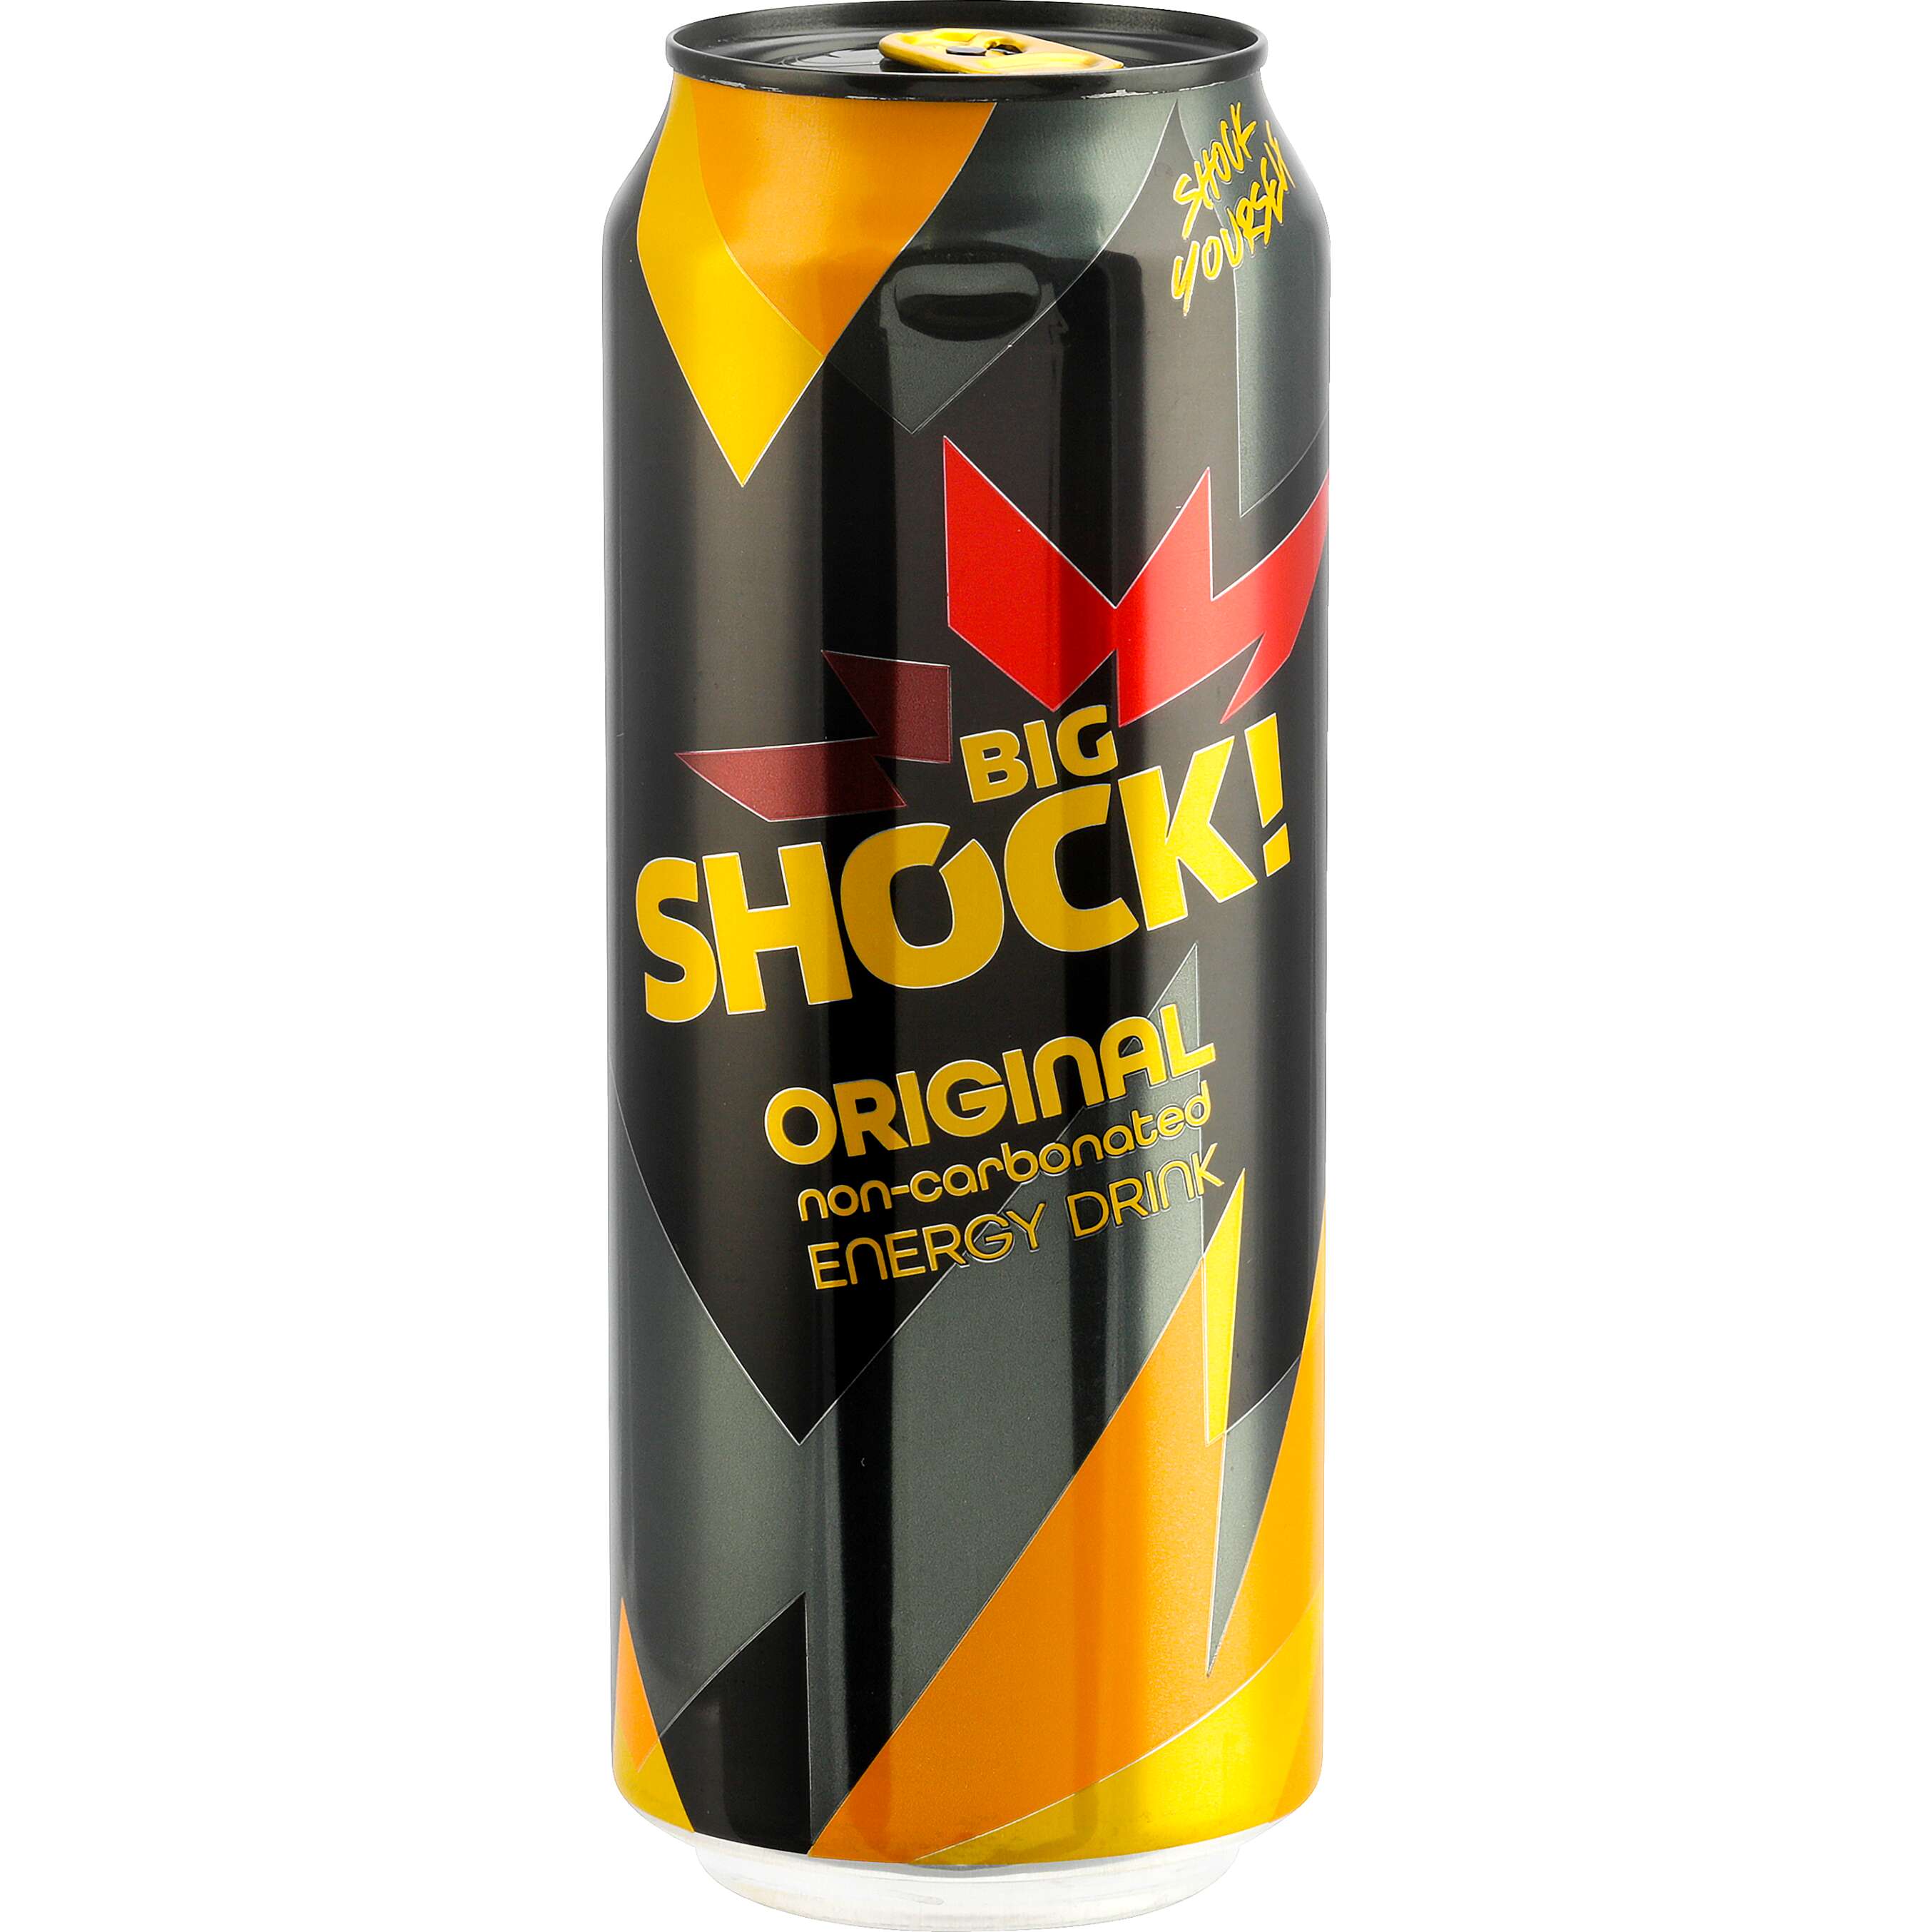 Zobrazit nabídku Big Shock Energetický nápoj různé druhy